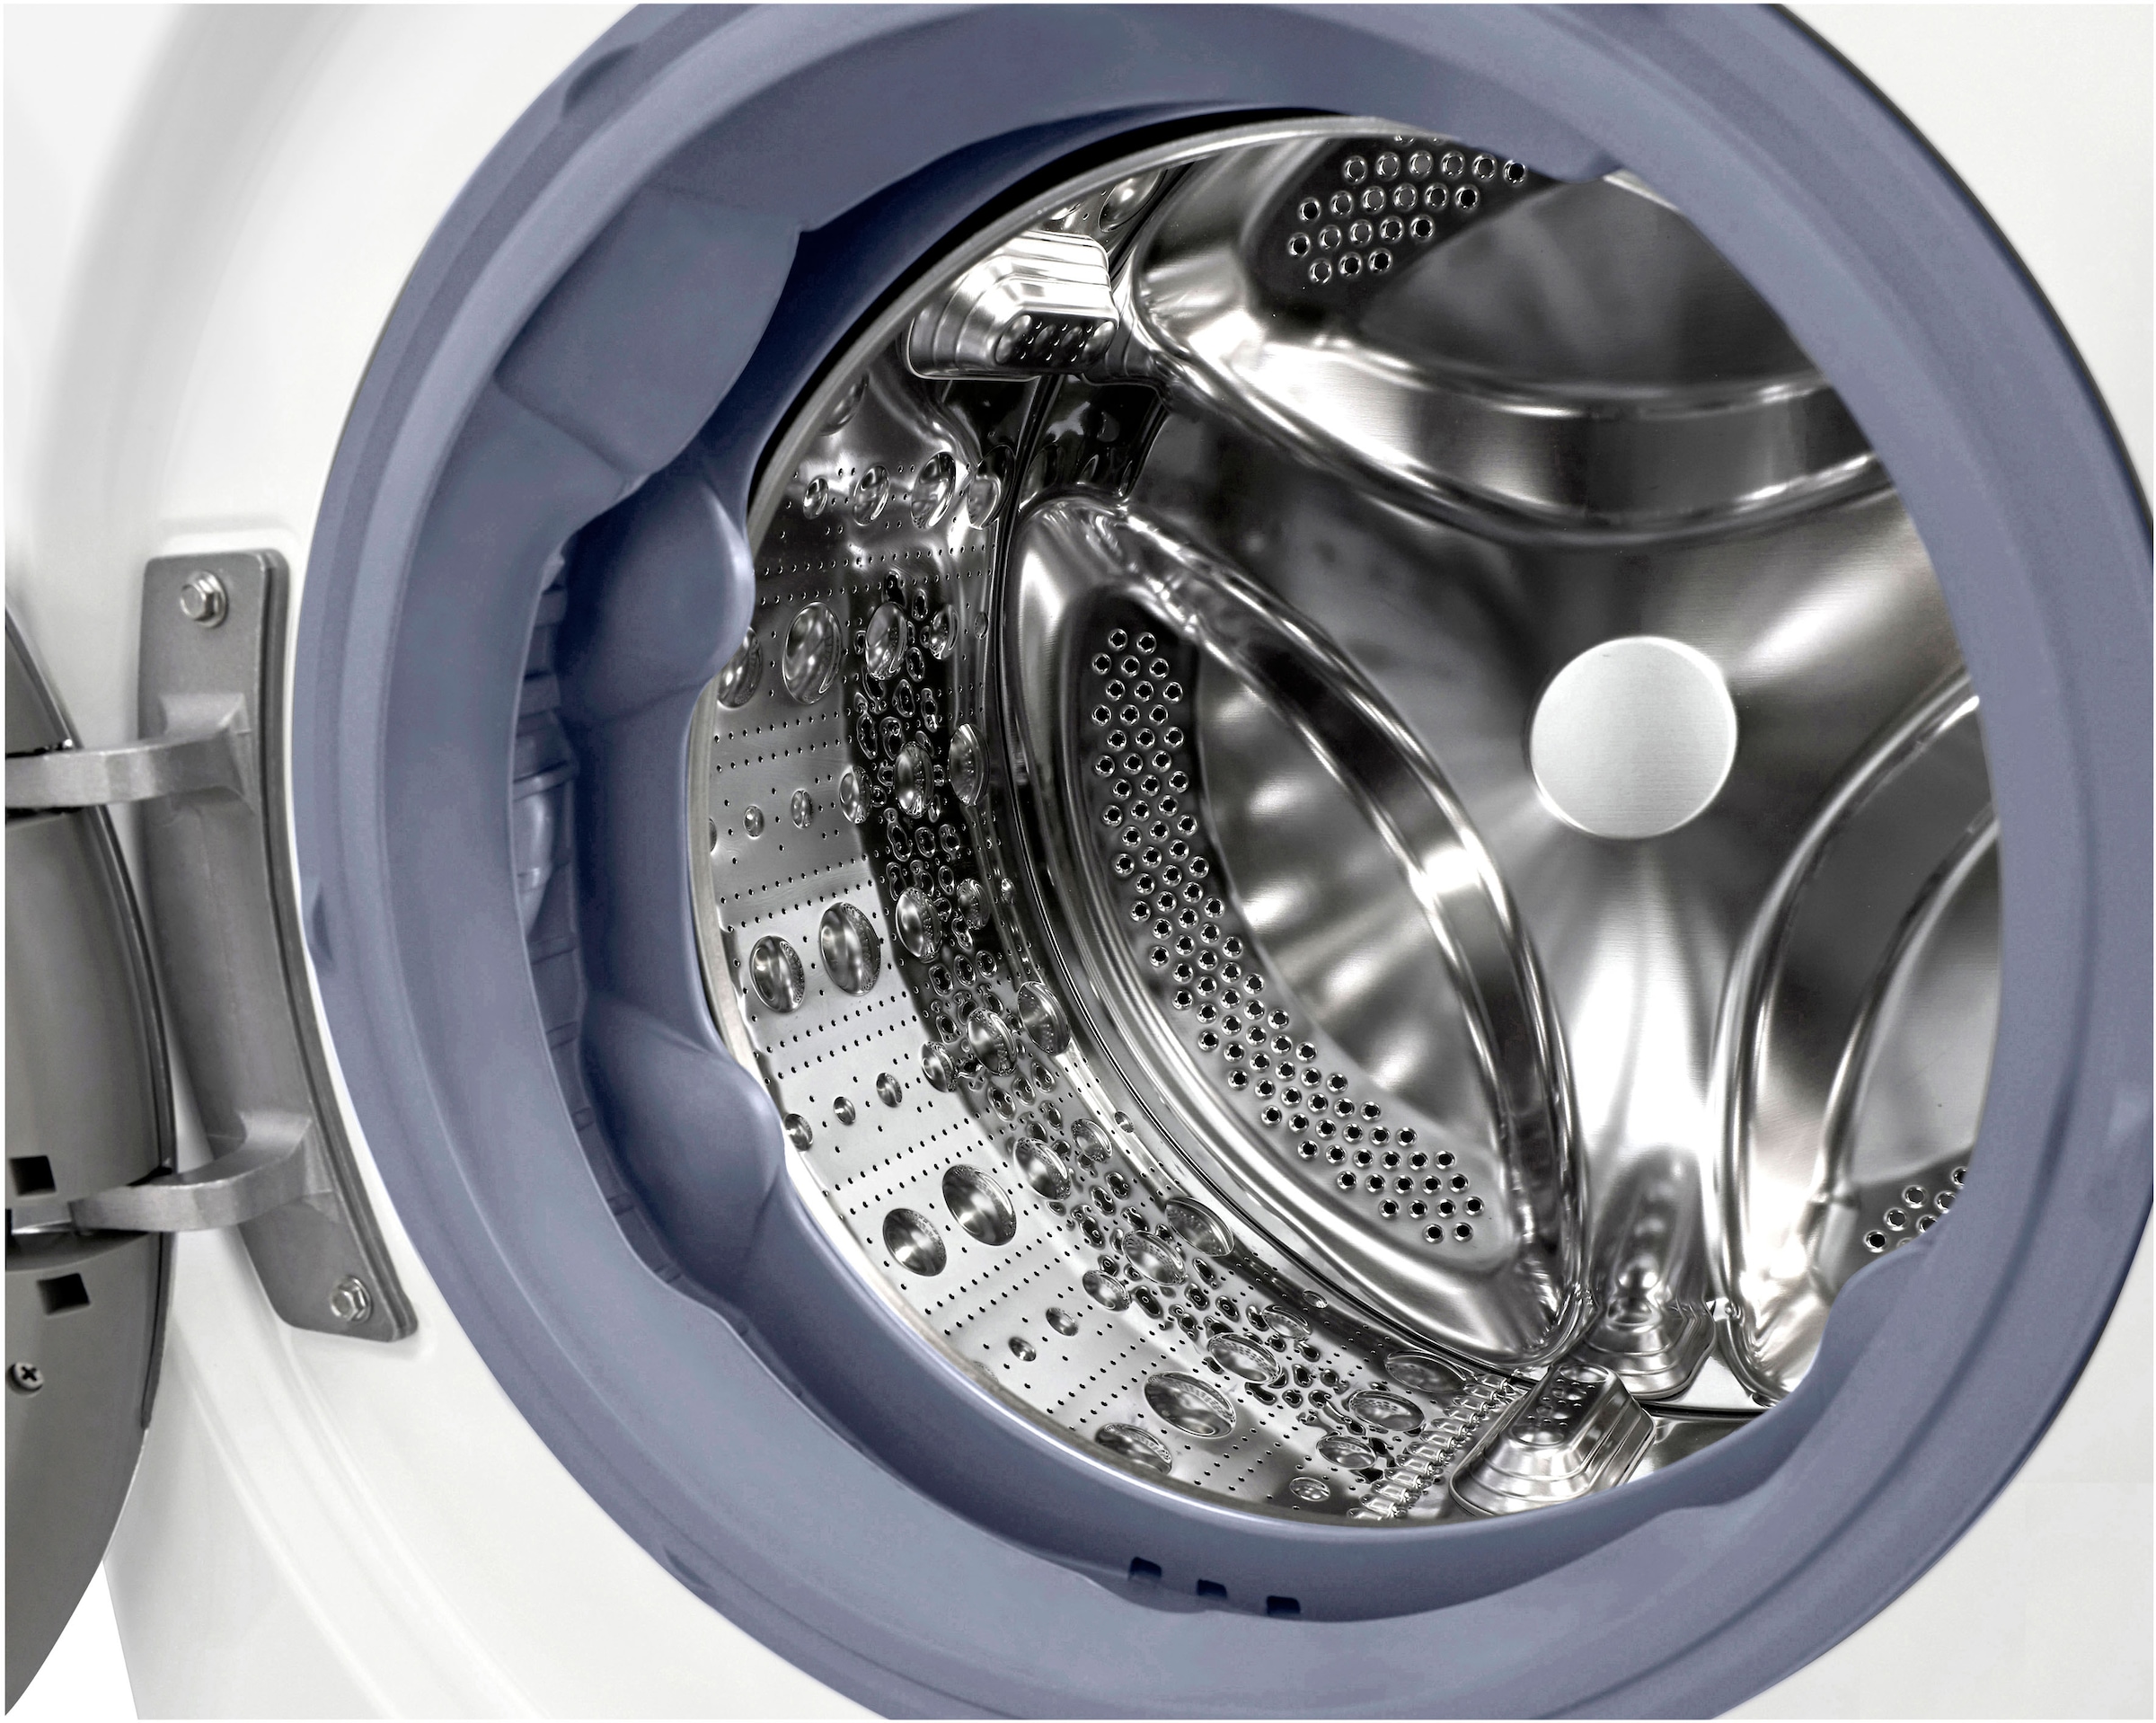 LG Waschmaschine »F6WV709P1«, F6WV709P1, 9 kg, 1600 U/min, TurboWash® - Waschen in nur 39 Minuten